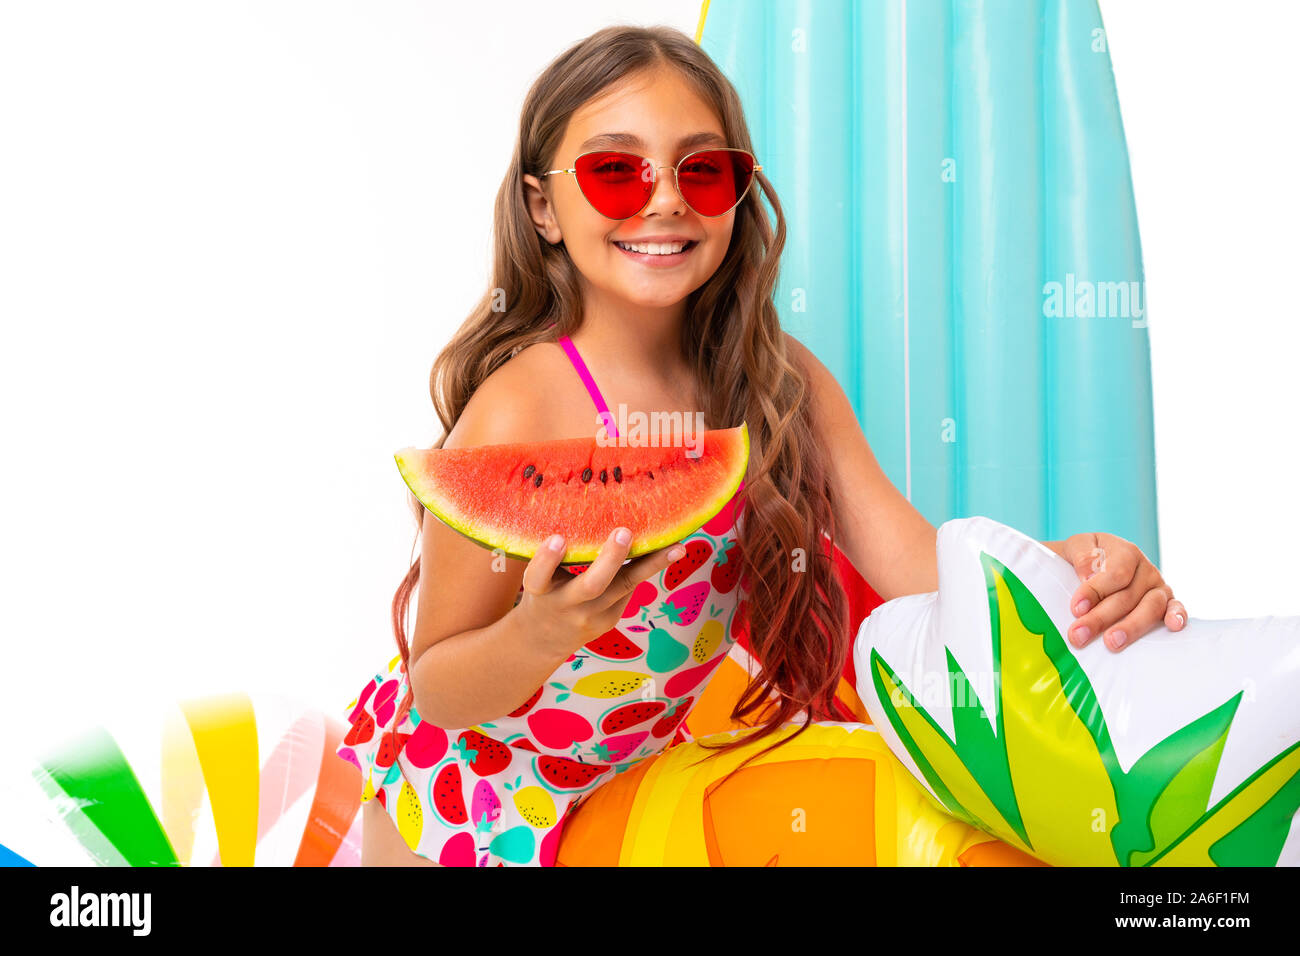 Mädchen mit langen gekreuzigt Haar in Sonnenbrille und Sonnencreme, steht in der Nähe von aufblasbaren Matratzen mit einer Wassermelone Stockfoto